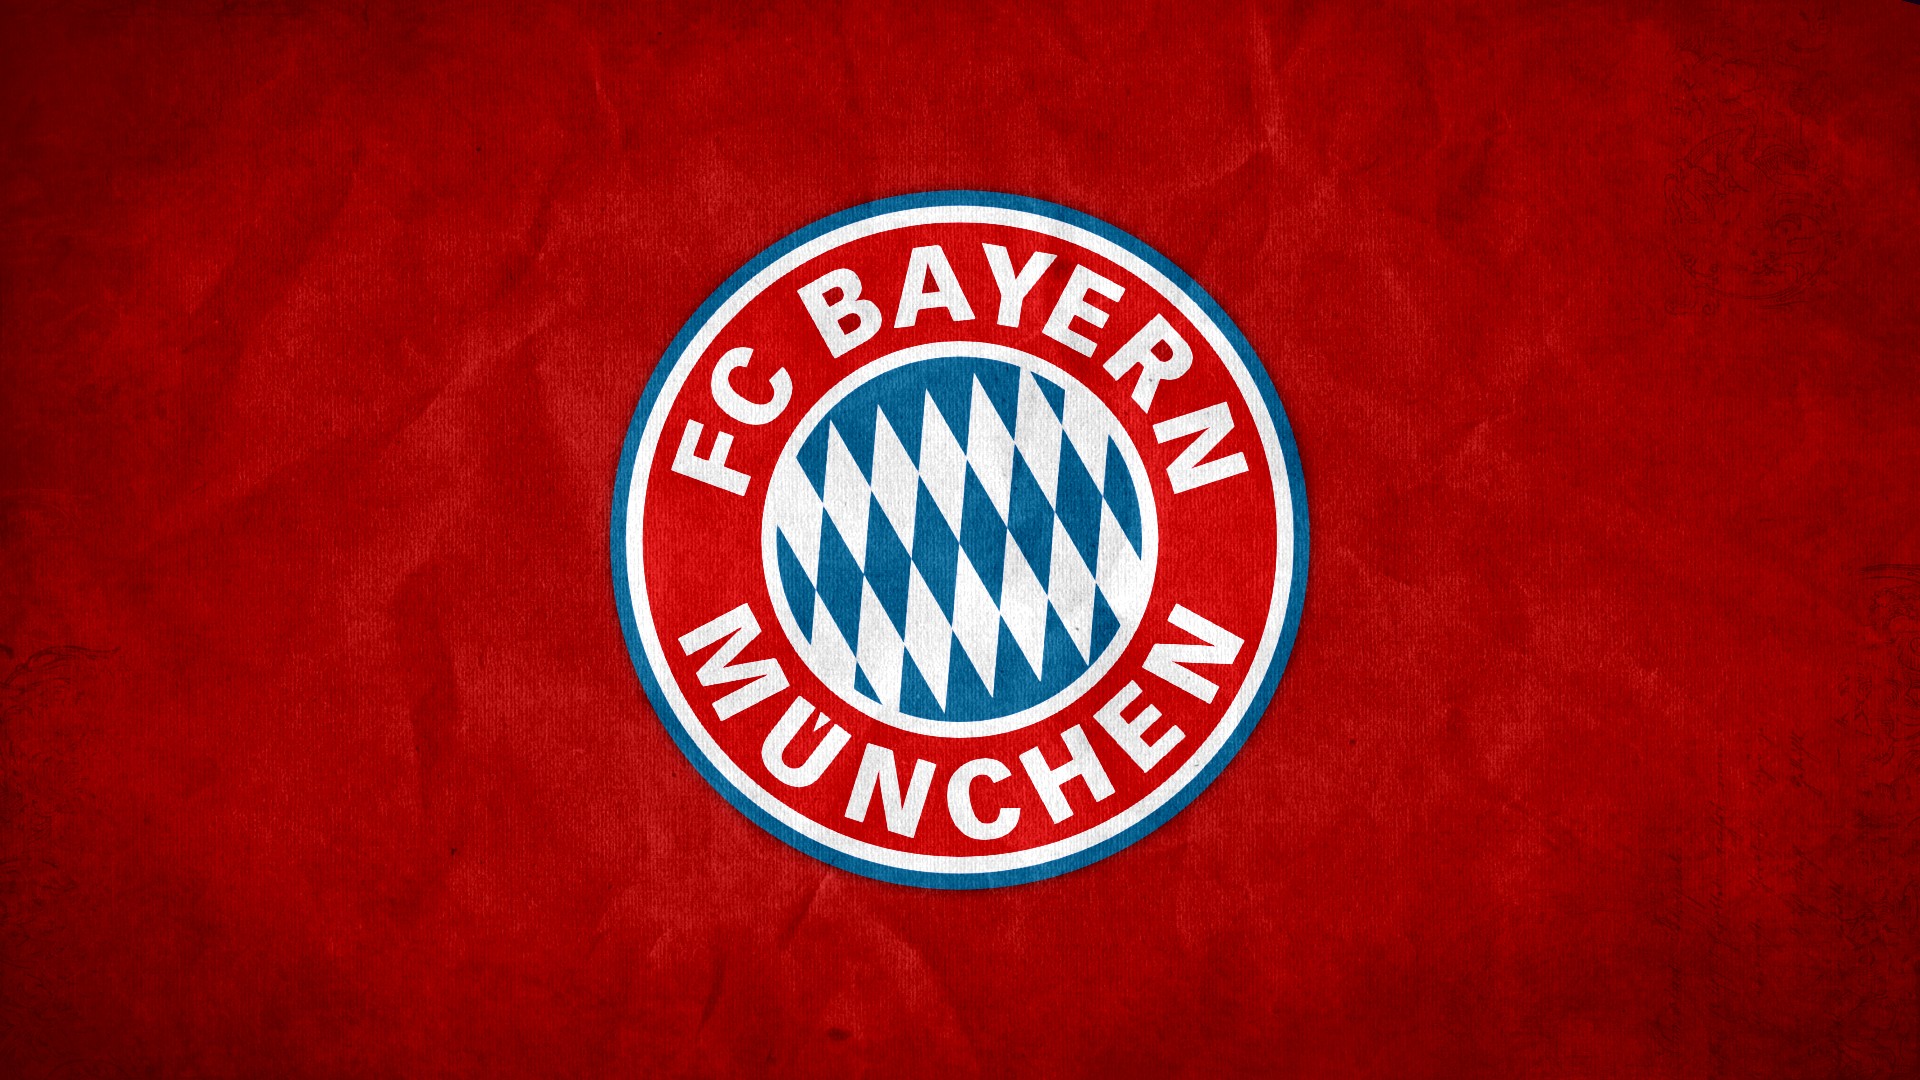 El Bayern multado con 45.000 euros por mal comportamiento de seguidores